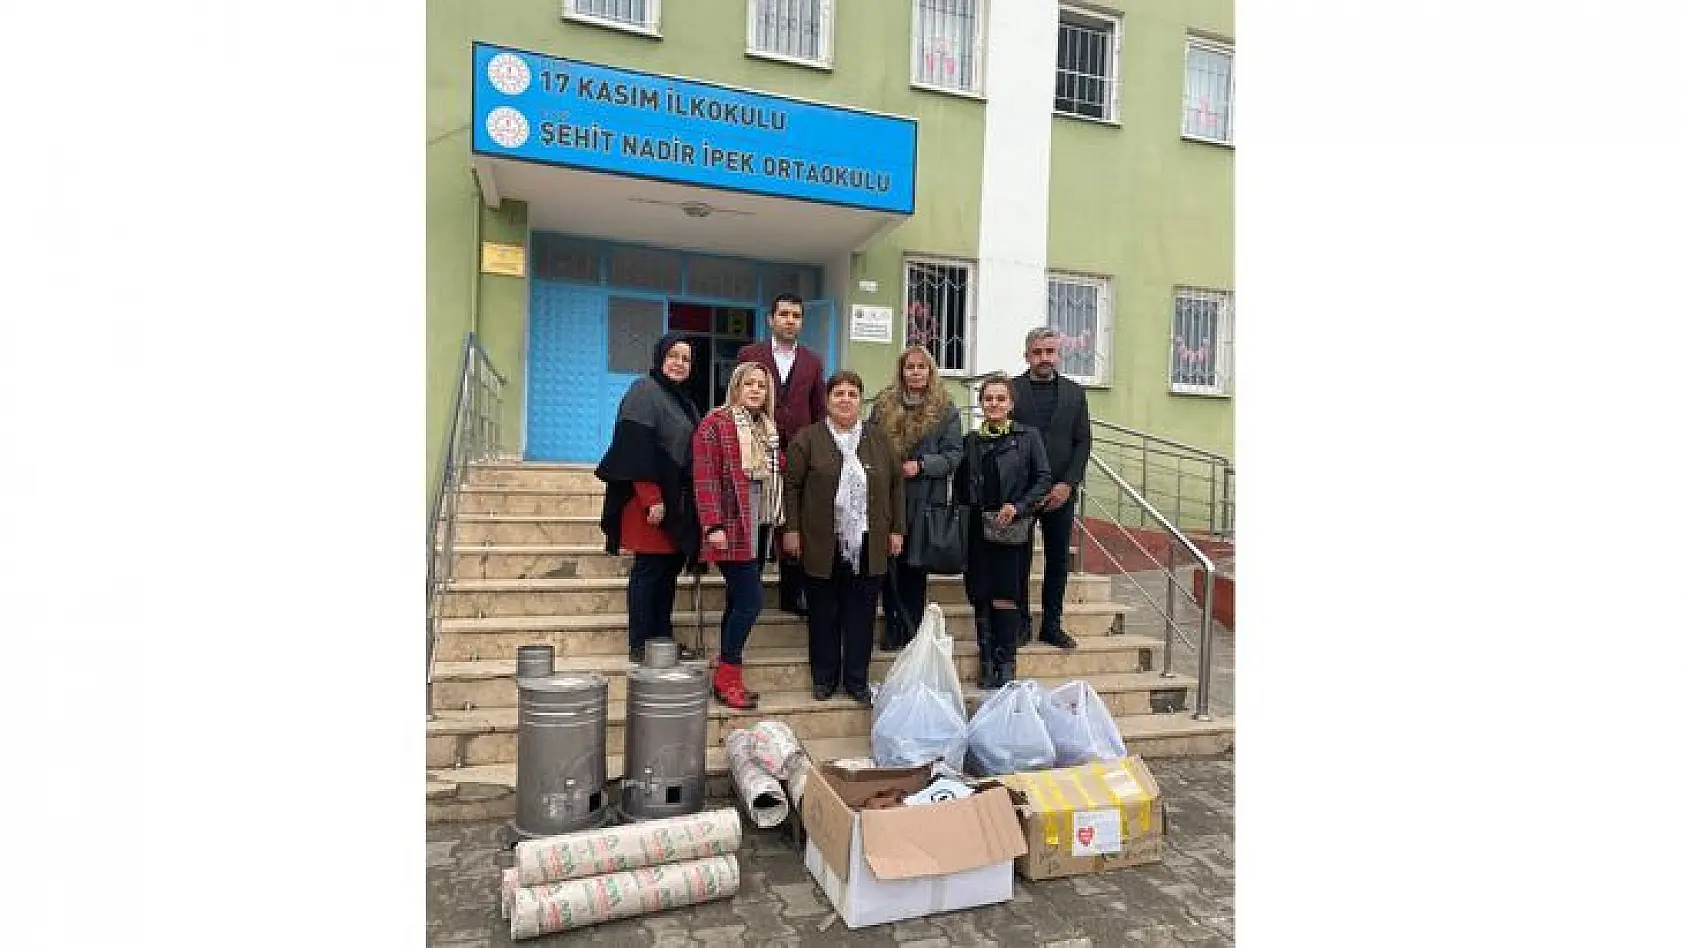 TKKD Elazığ Şubesi, Şehit Nadir İpek Ortaokulu'nu Ziyaret Etti 